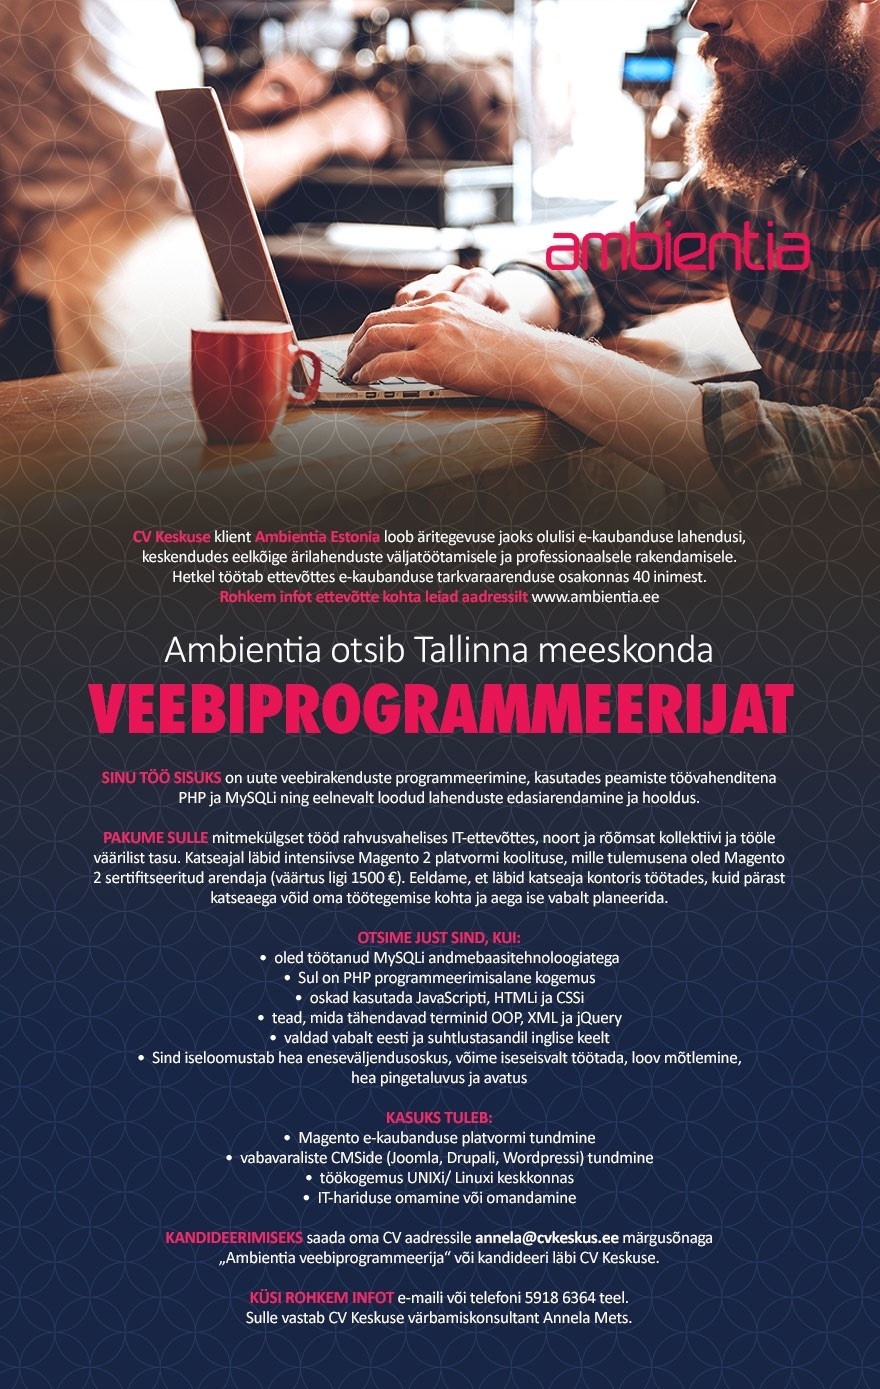 CV KESKUS OÜ Ambientia otsib Tallinna meeskonda veebiprogrammeerijat